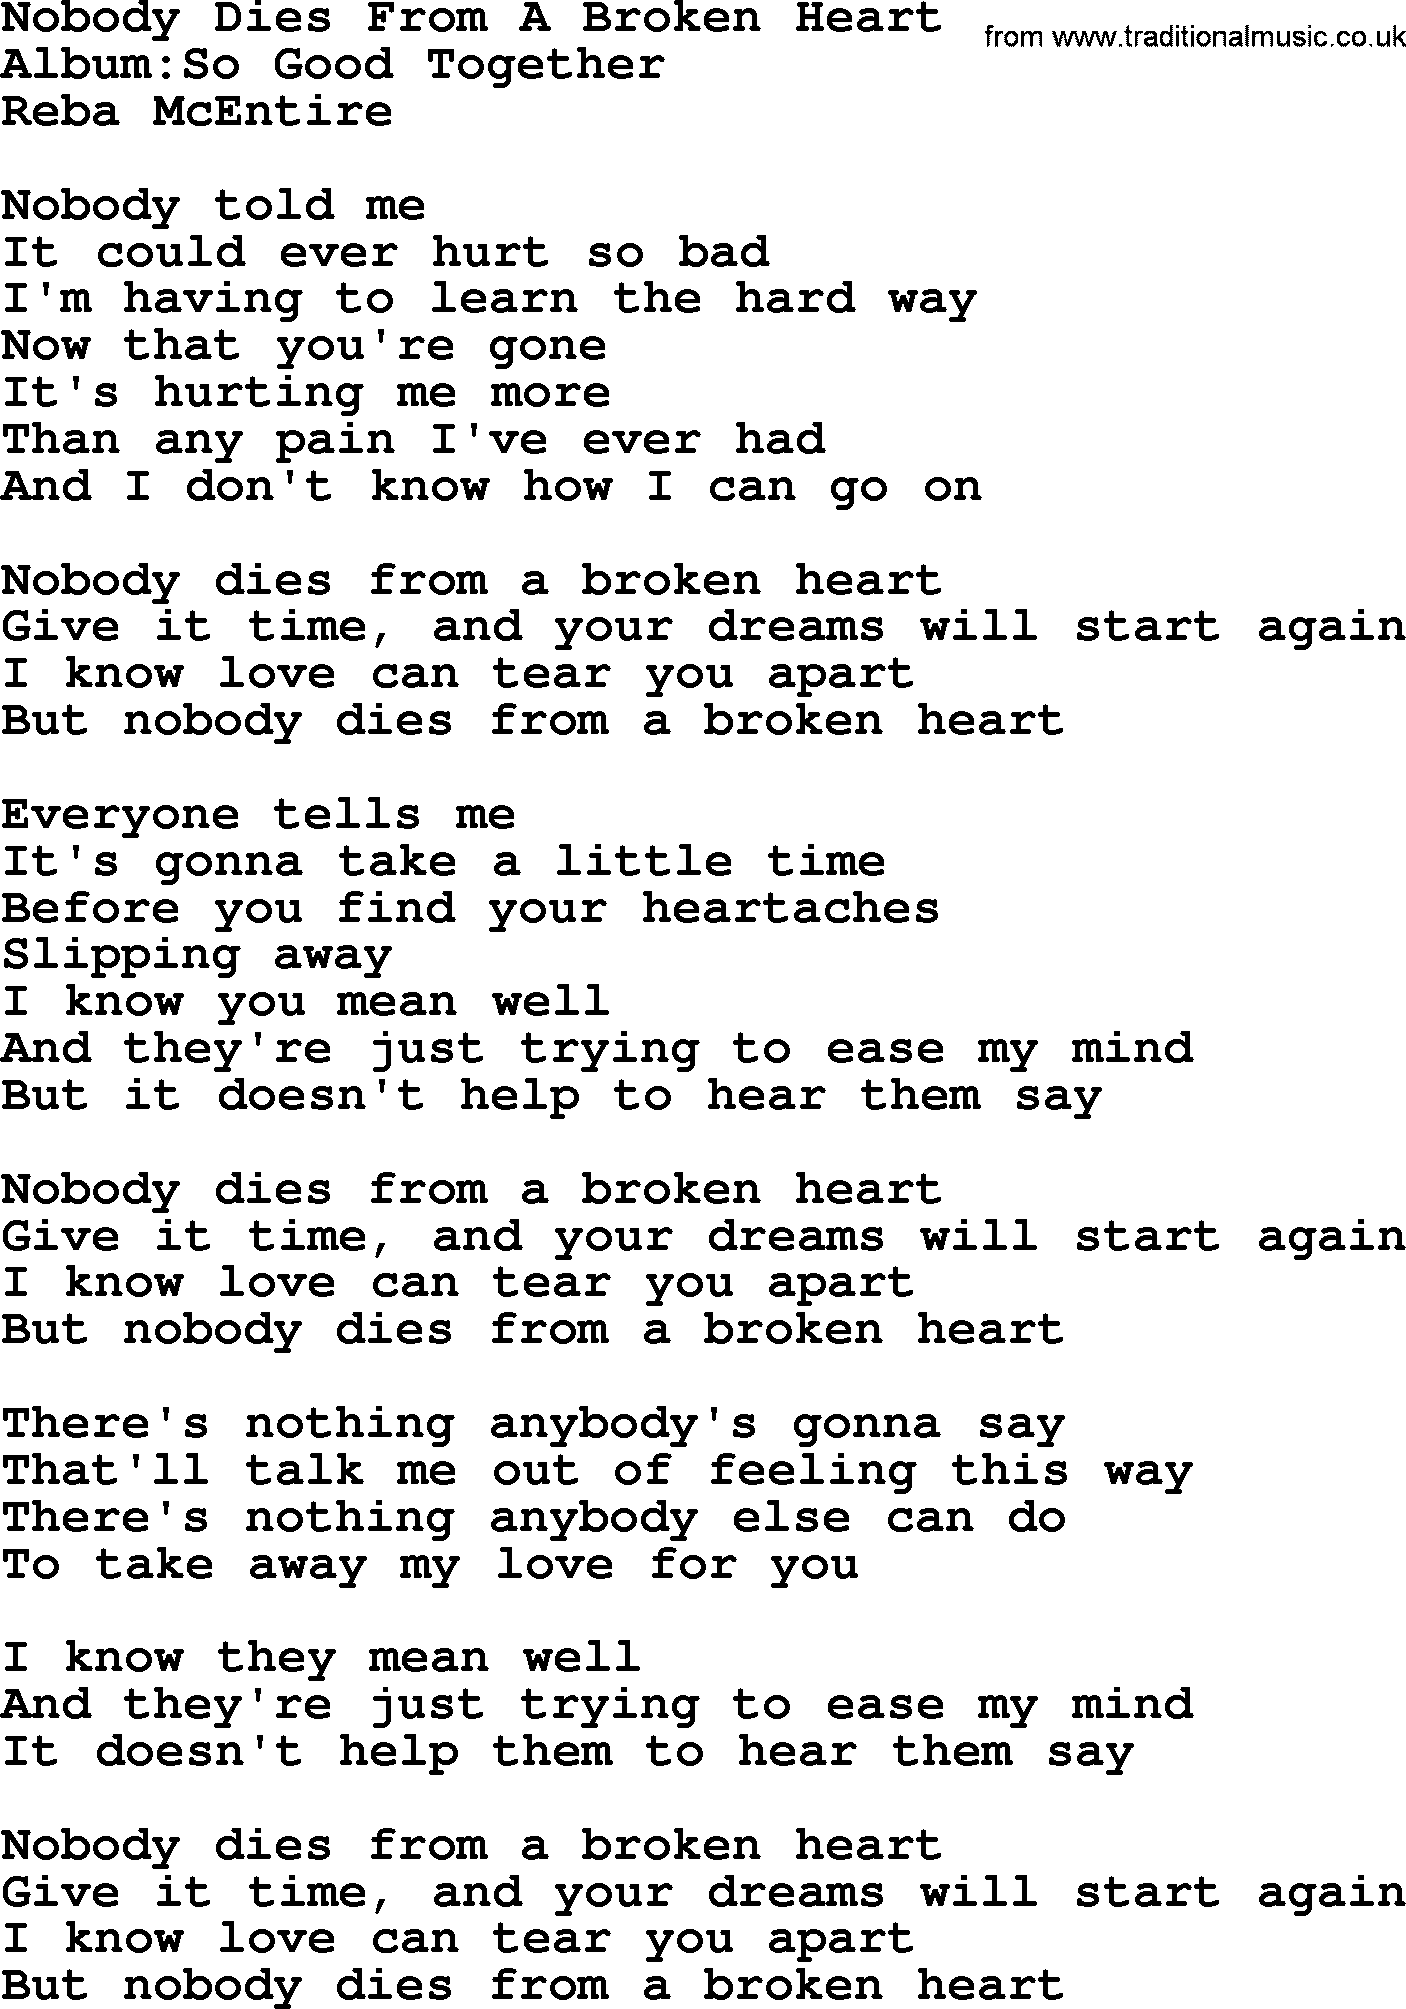 Reba McEntire song: Nobody Dies From A Broken Heart lyrics